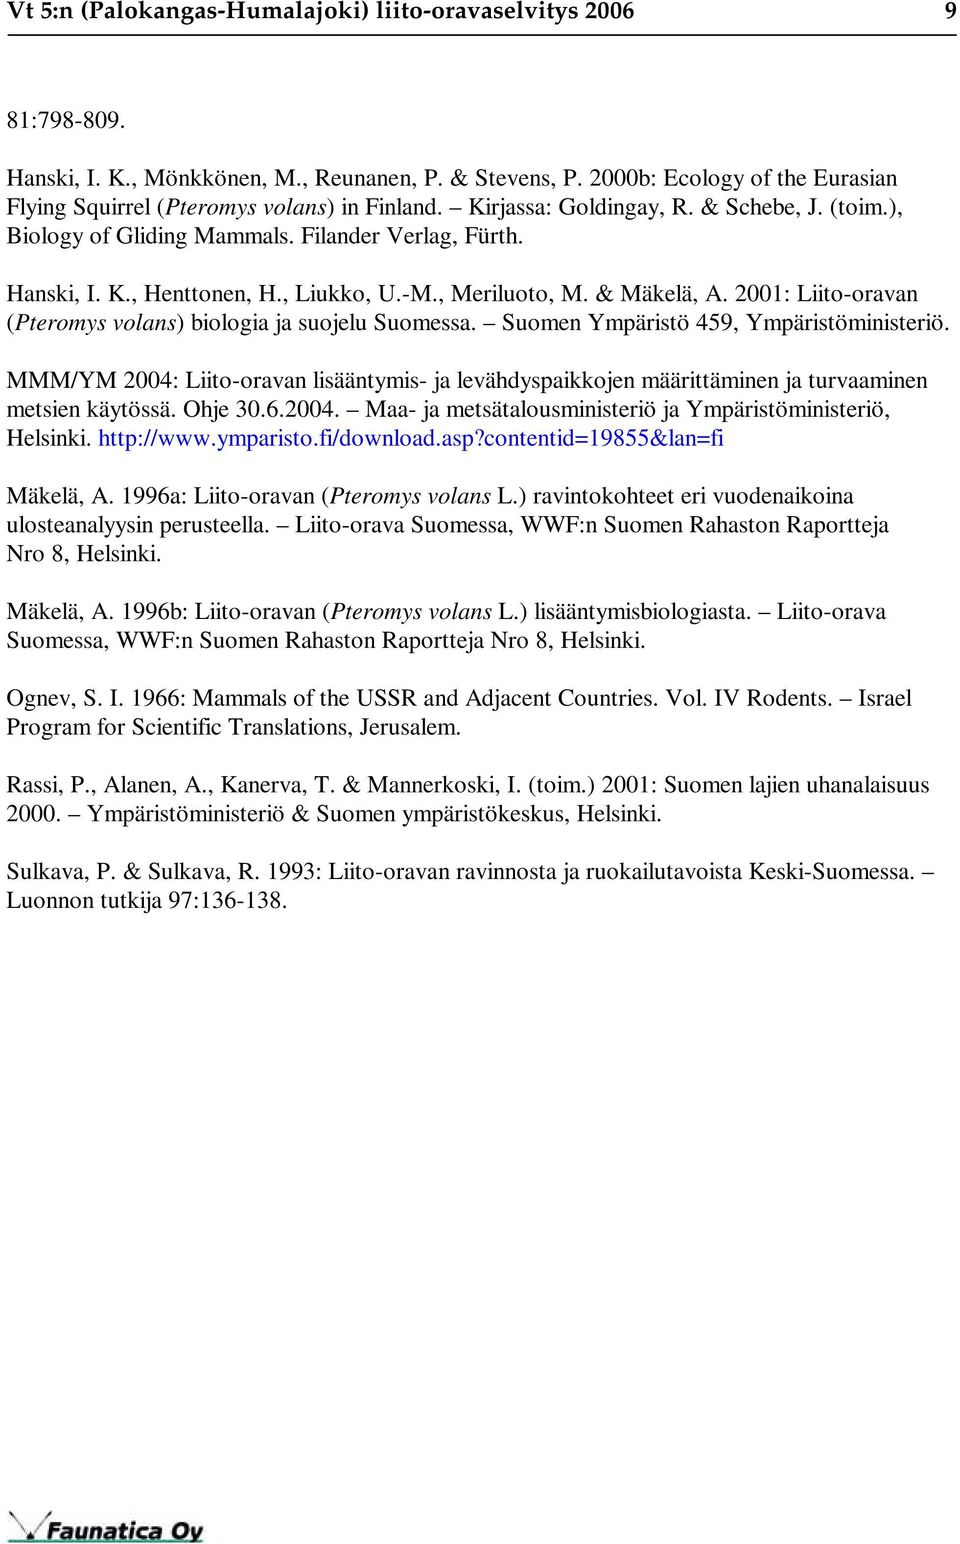 , Liukko, U.-M., Meriluoto, M. & Mäkelä, A. 2001: Liito-oravan (Pteromys volans) biologia ja suojelu Suomessa. Suomen Ympäristö 459, Ympäristöministeriö.